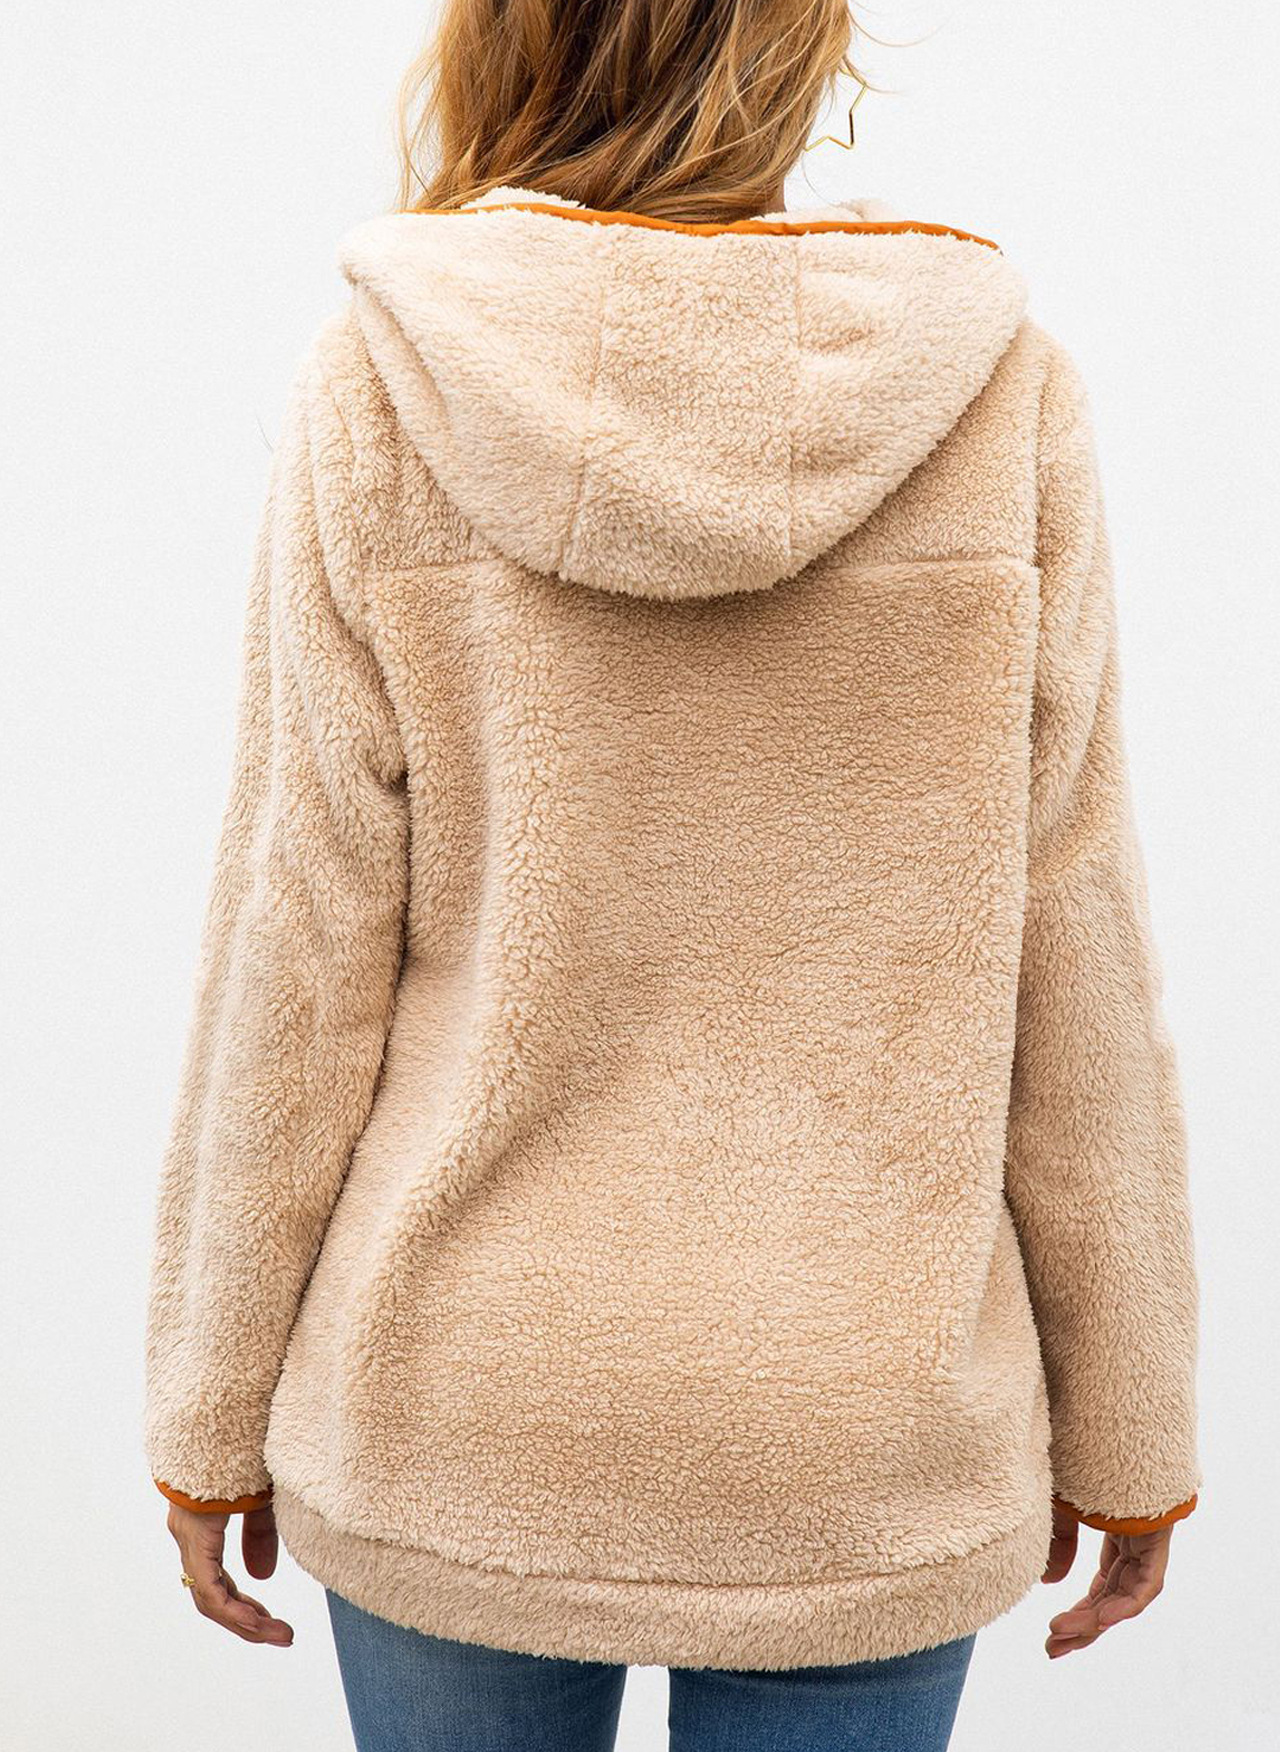 Manteau de laine femme - Ref 3417082 Image 5